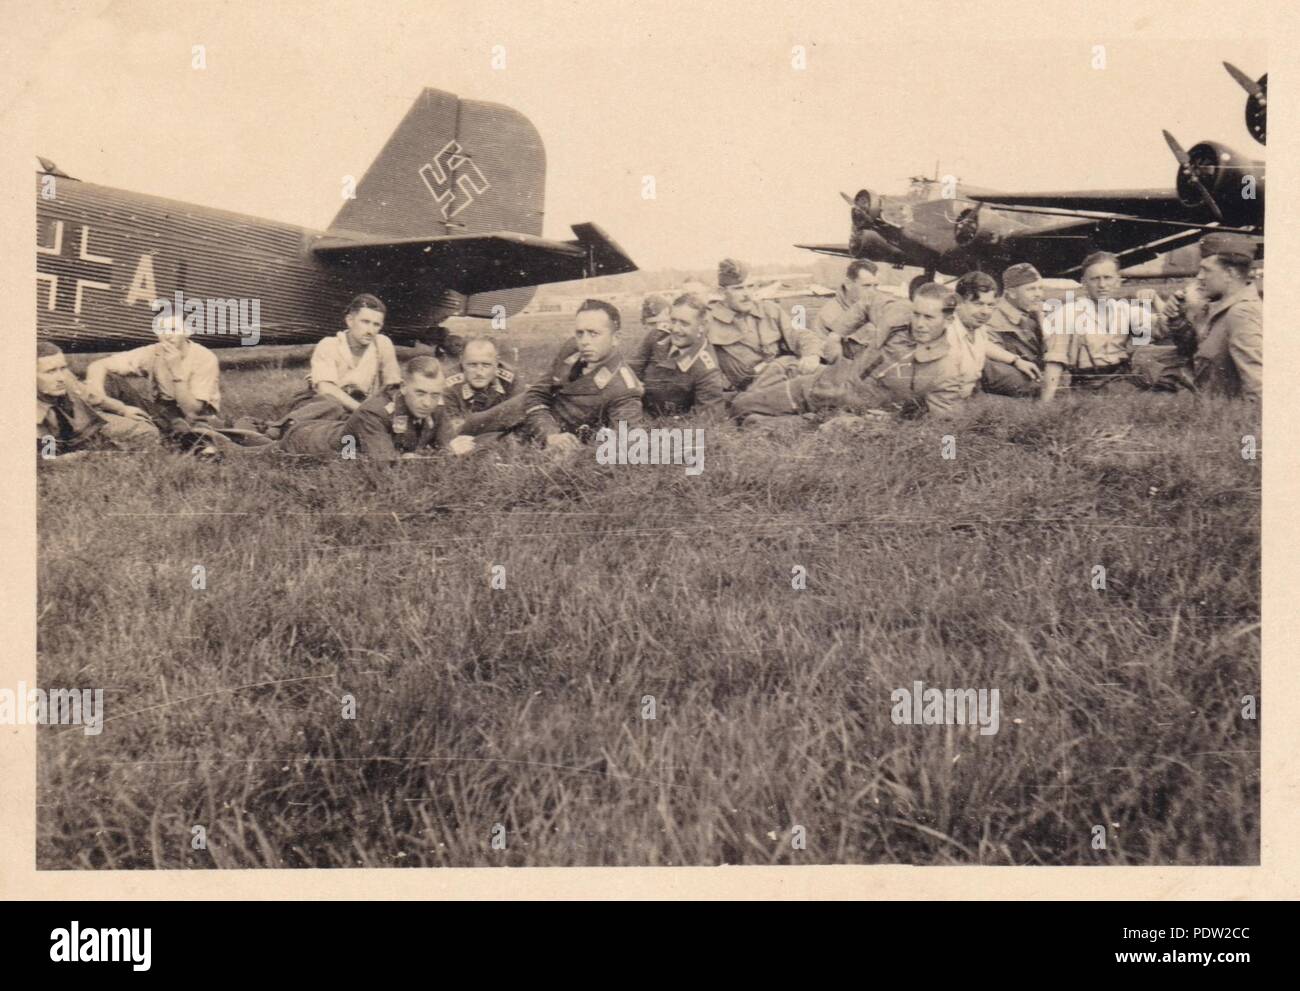 Bild aus dem Fotoalbum von Oberfeldwebel Karl gendner von 1. Staffel, Kampfgeschwader 40: Karl Gendner (vierter von rechts) und anderen Besatzungsmitglieder aus 3./KGzbV 9 zwischen den Missionen neben ihrem Junkers Ju 52/3 m Transportflugzeug in Deblin Flugplatz, Polen entspannen im September 1939. Stockfoto